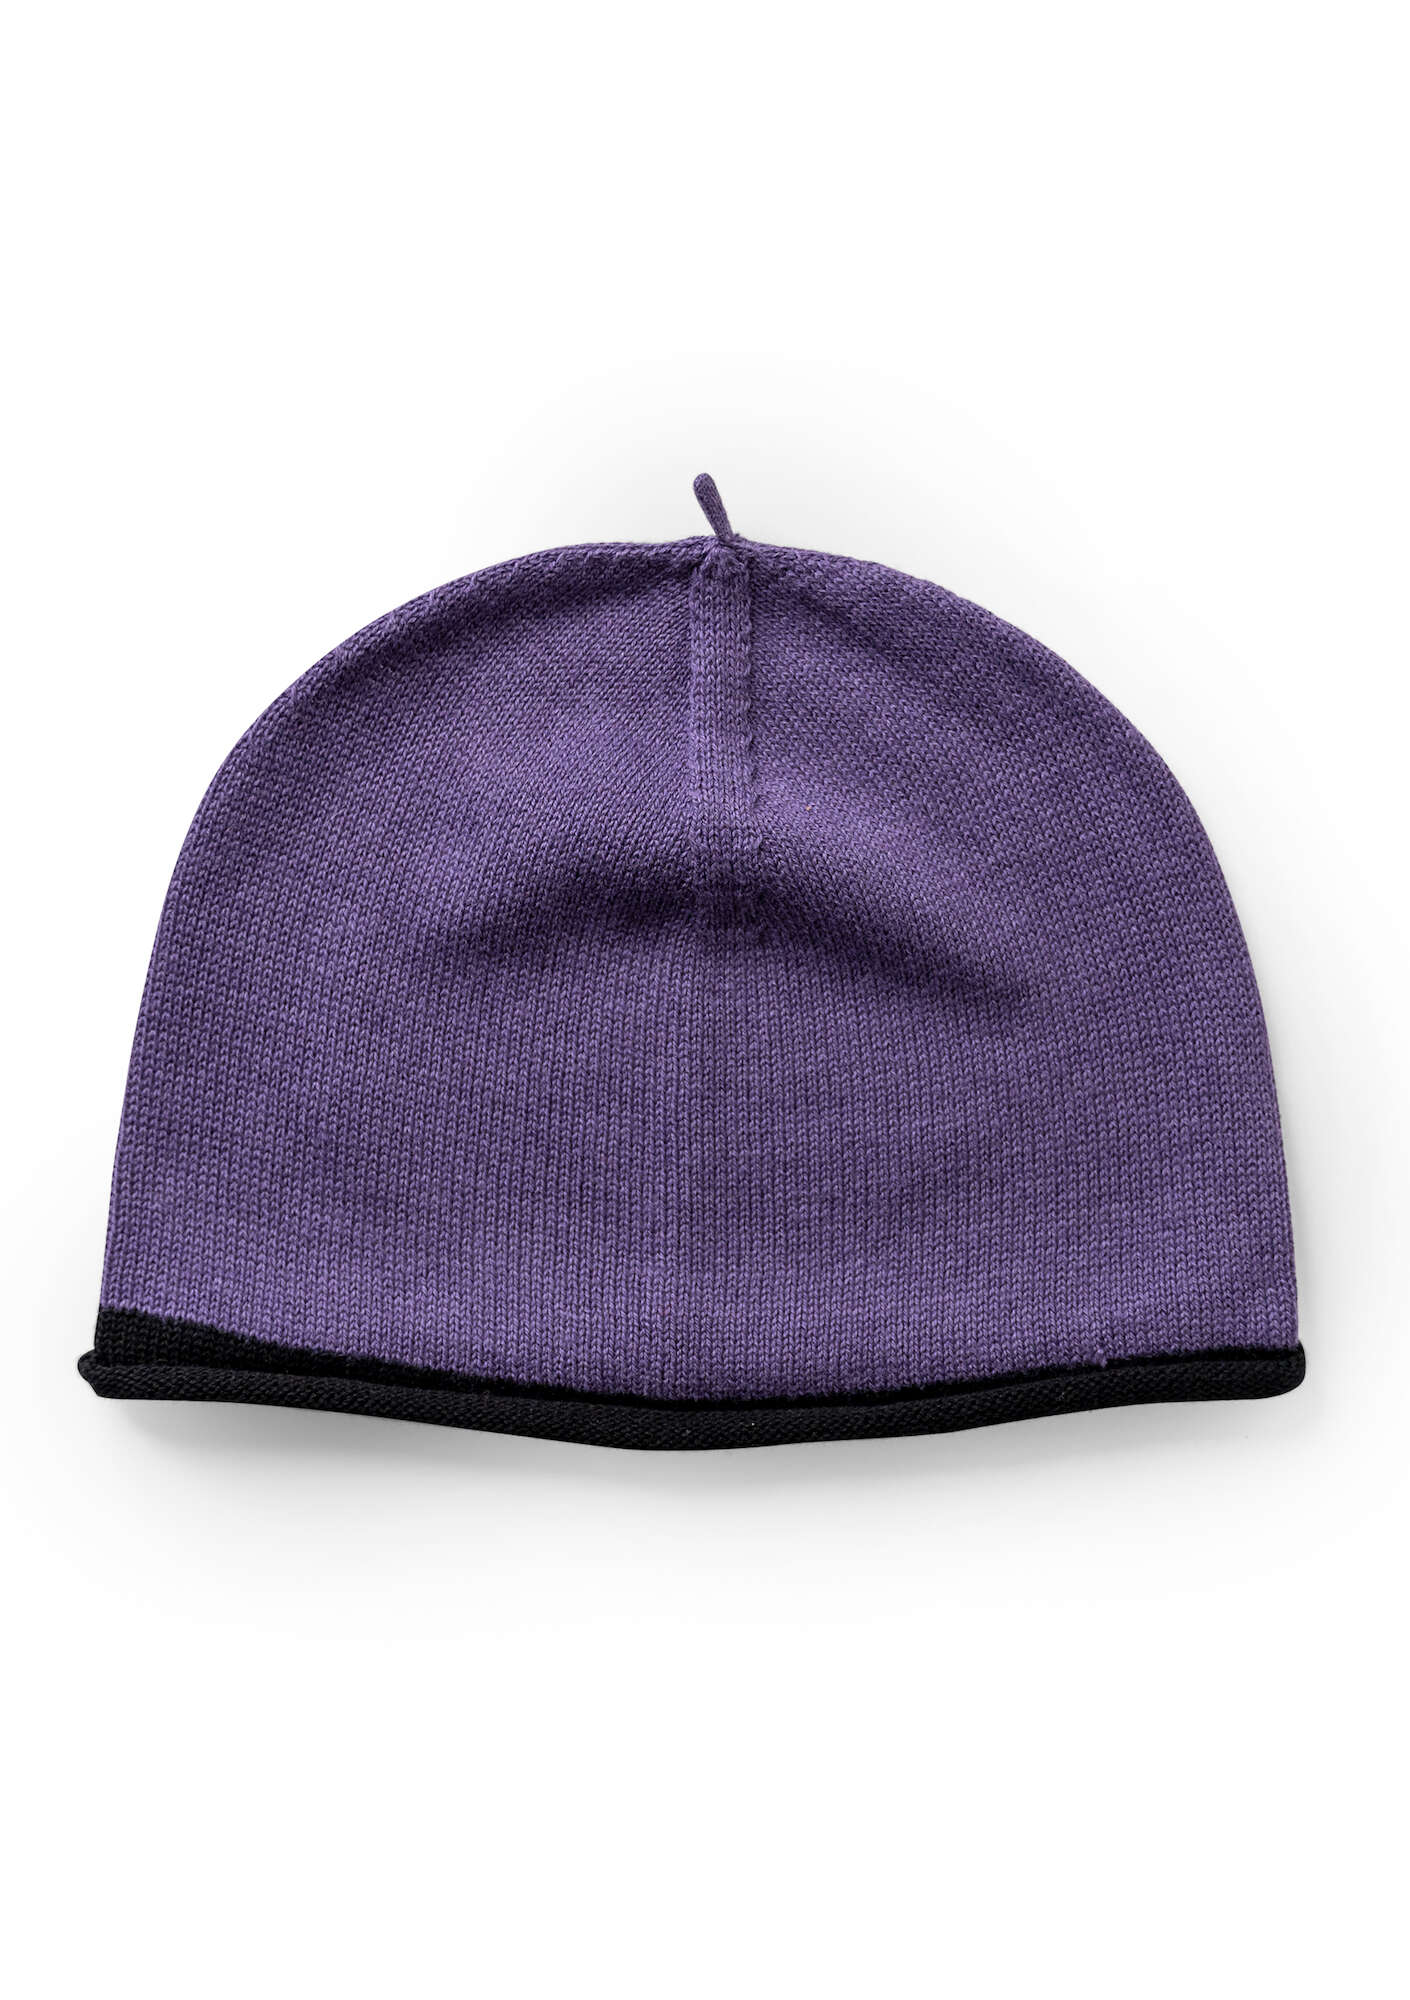 Rainbow hat  dusky purple